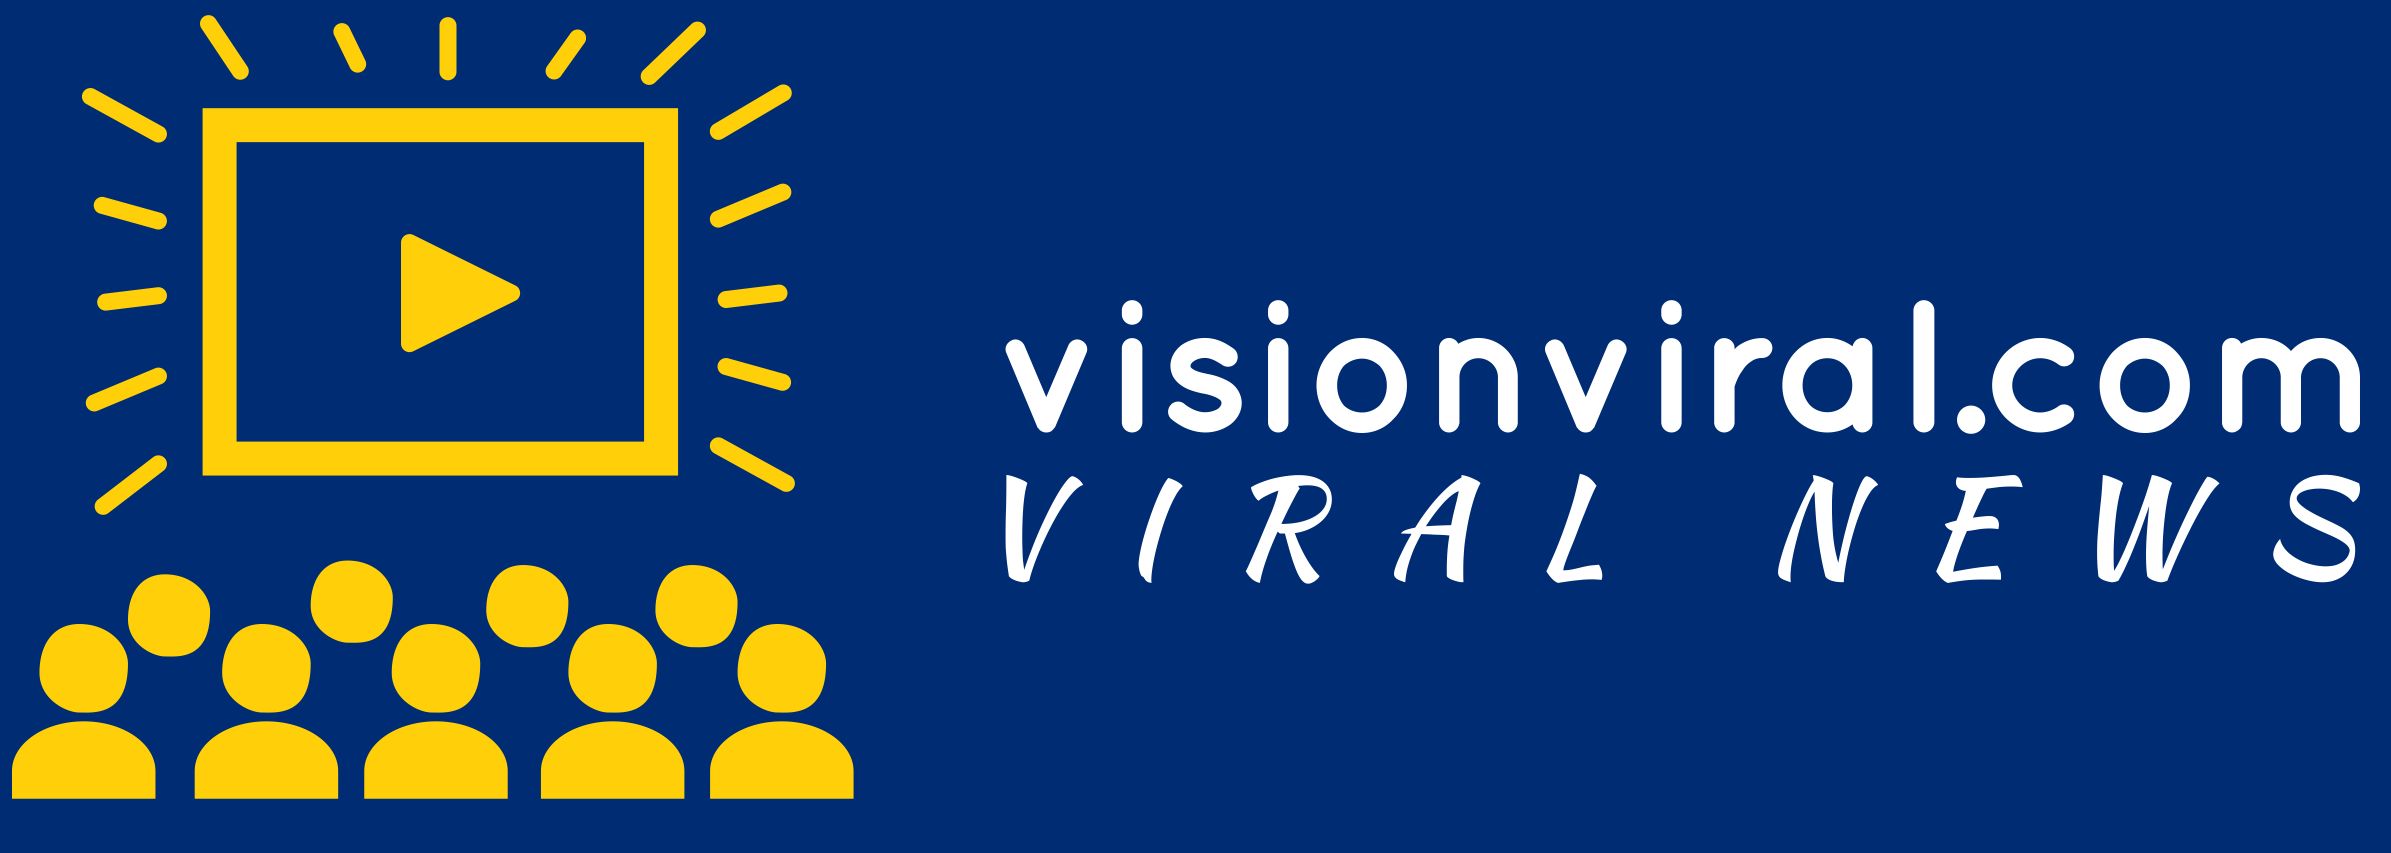 Vision Viral